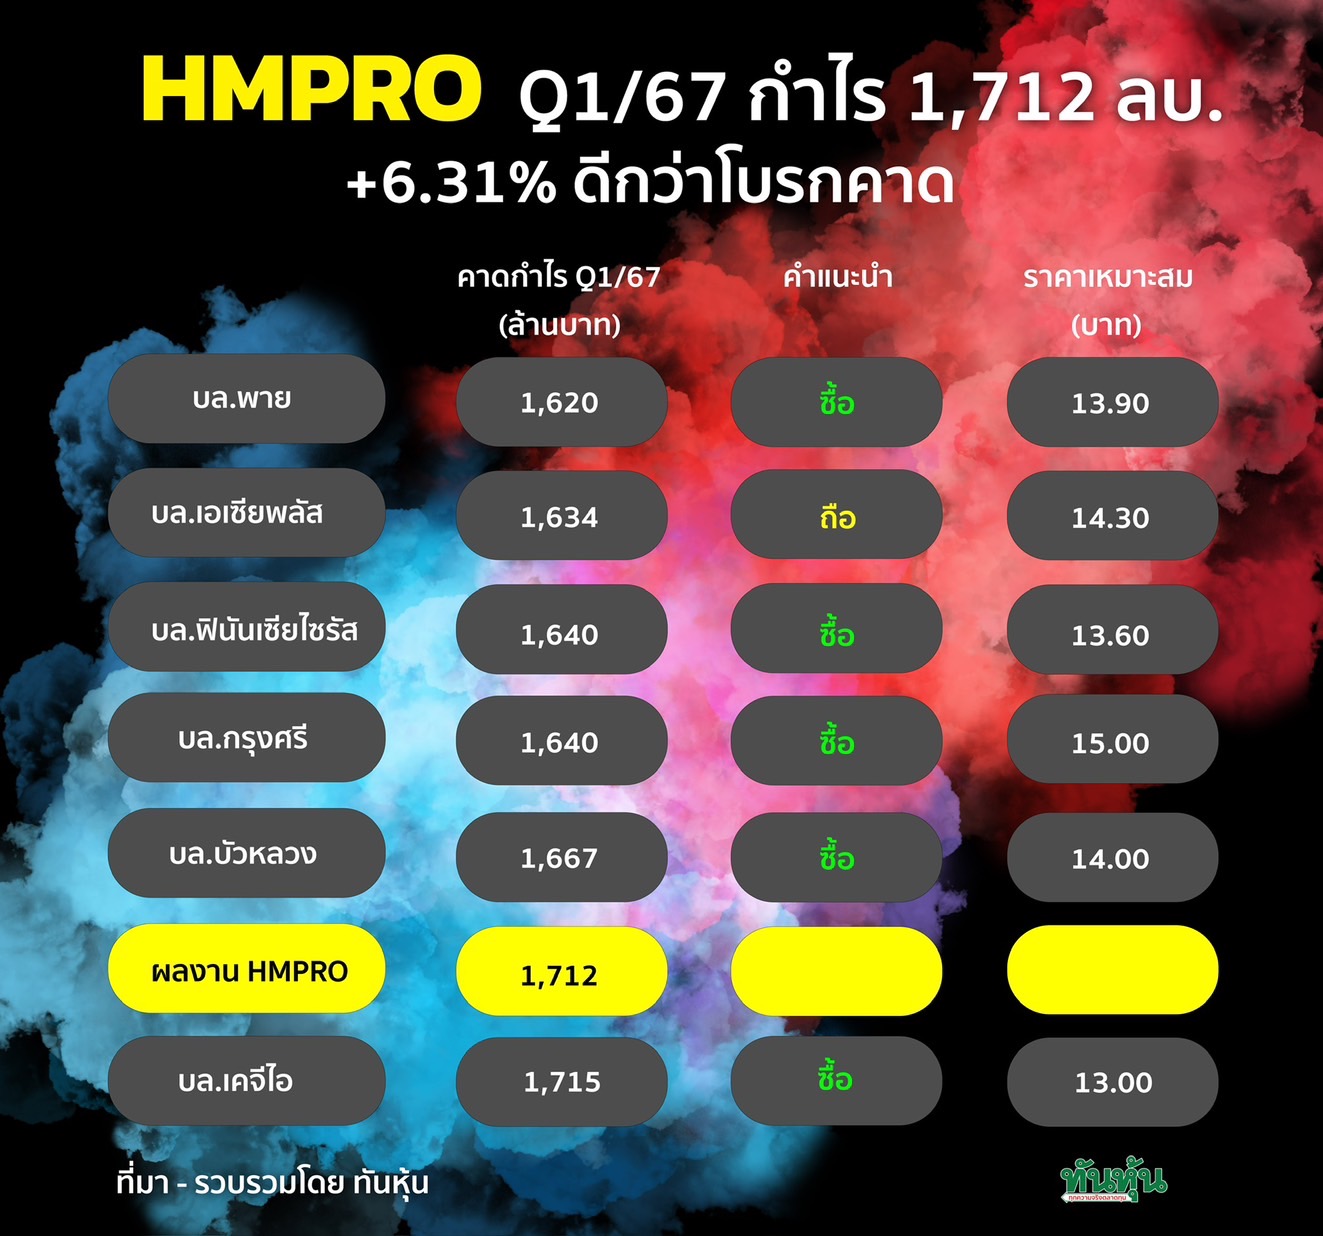 HMPRO Q1/67 กำไร 1,712 ลบ. +6.31% ดีกว่าโบรกคาด